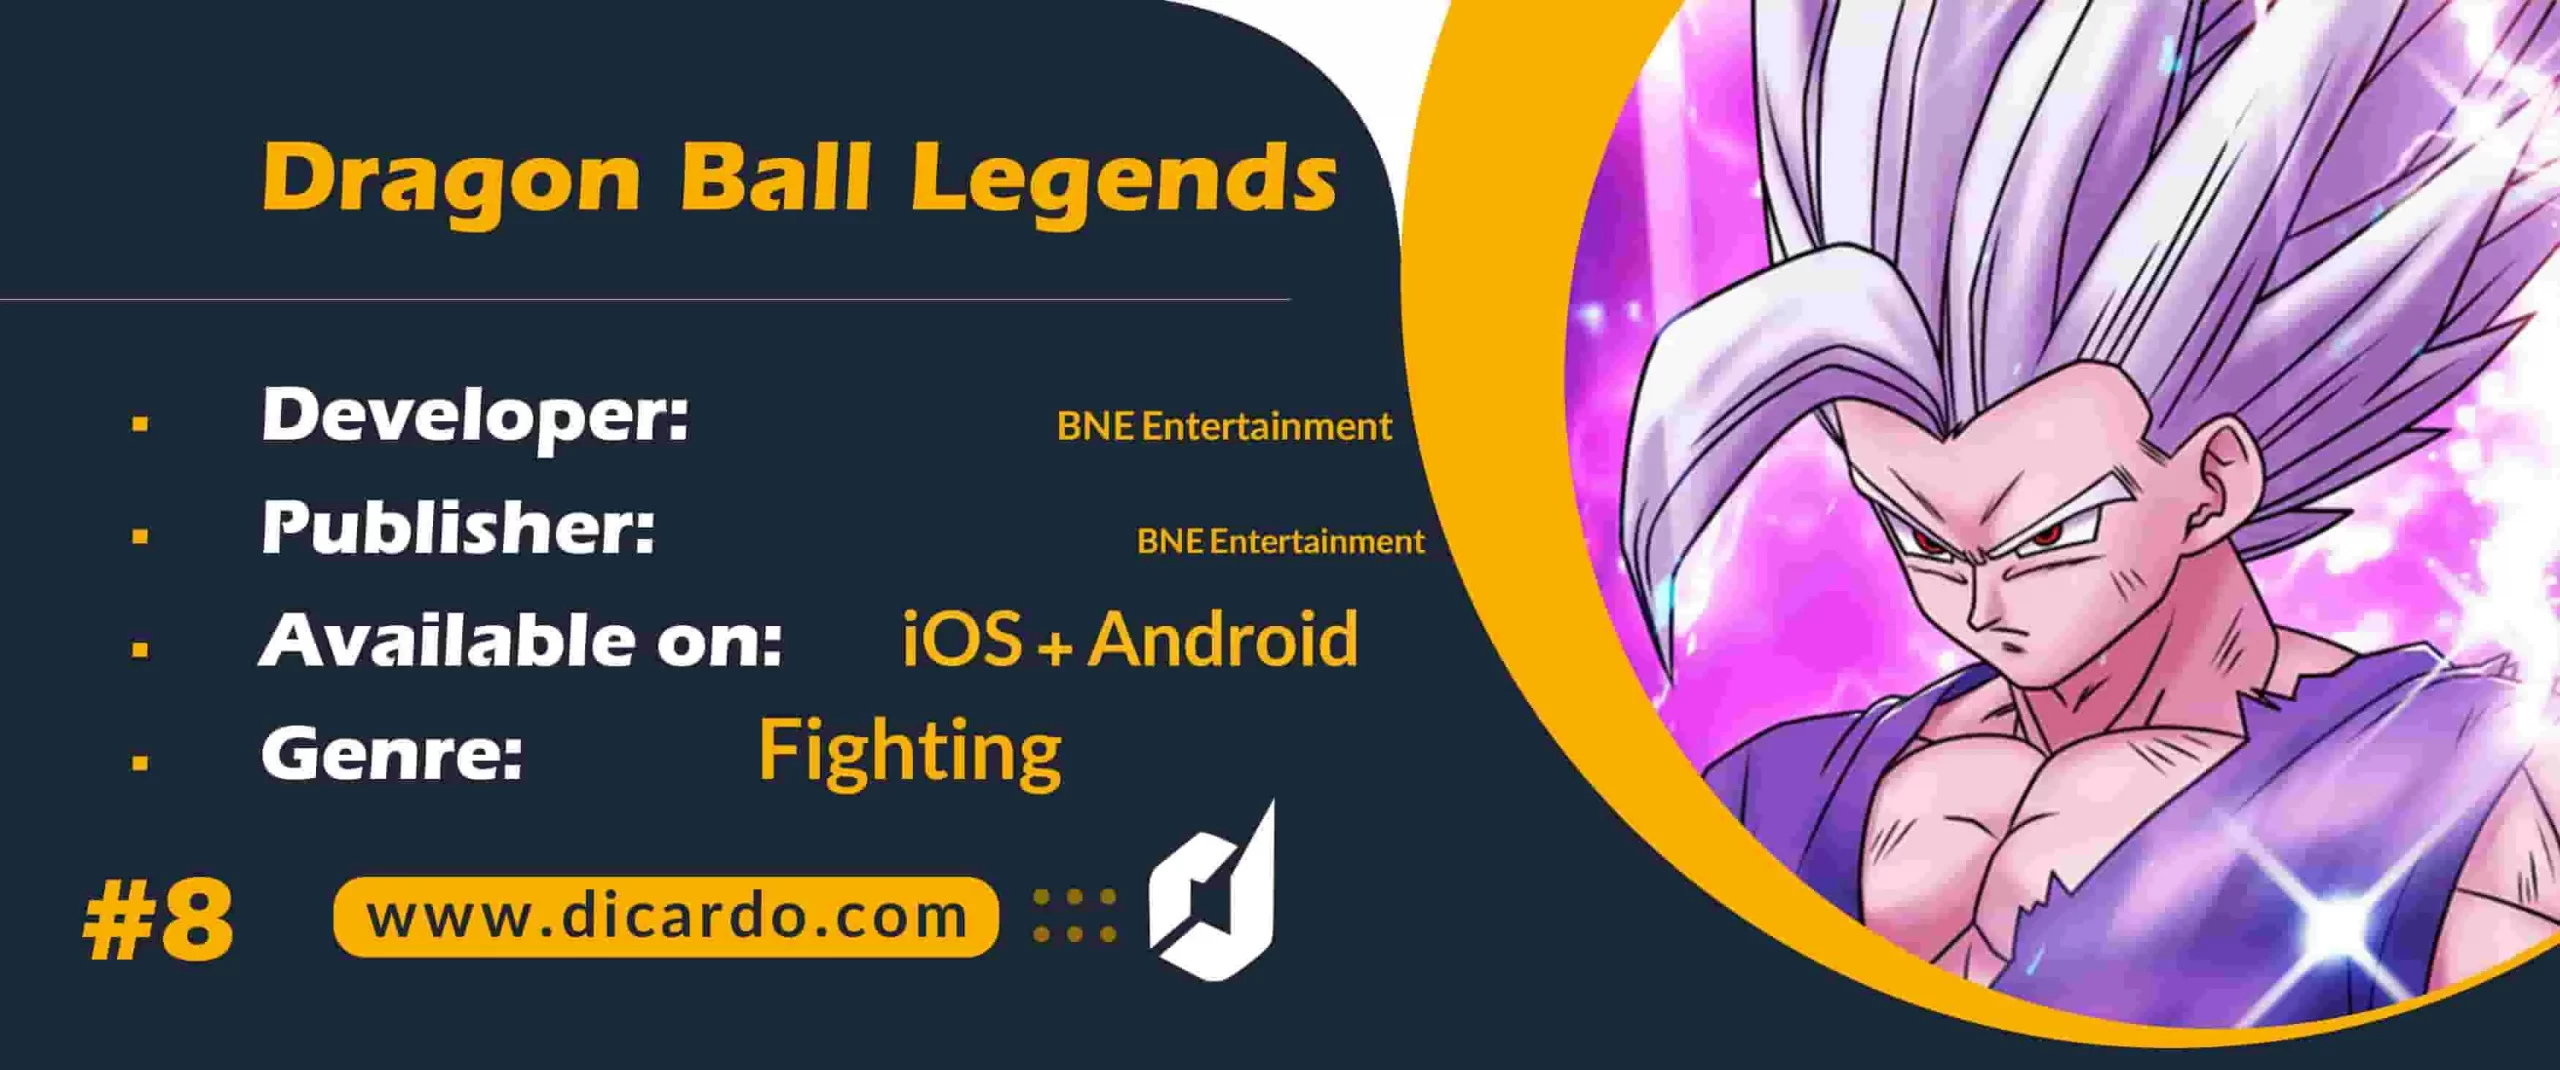 #8 دراگون بال لجندز Dragon Ball Legends